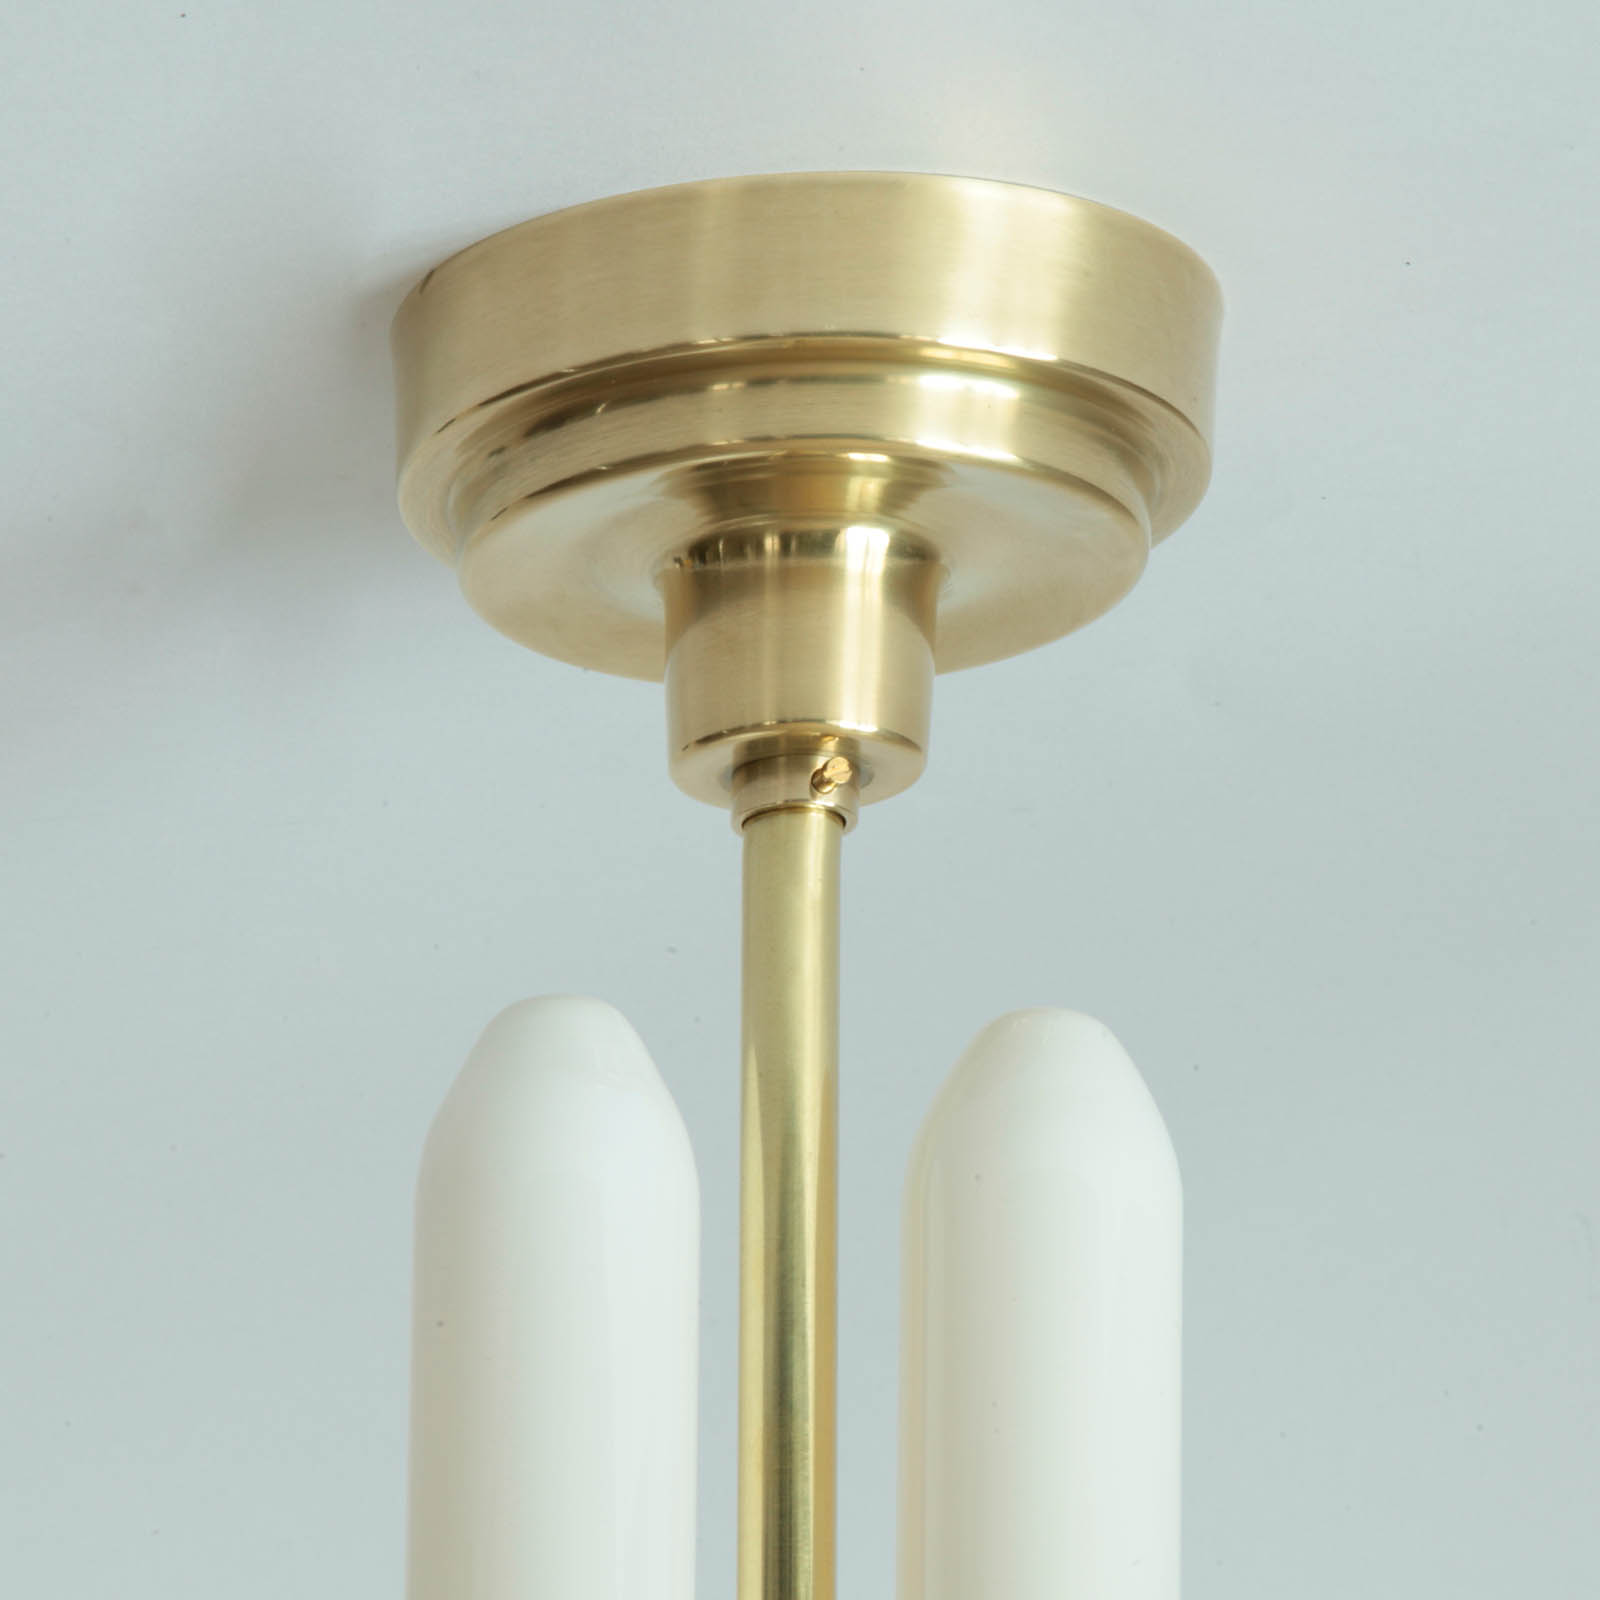 Extravagante Kugel-Hängeleuchte mit zwei Röhrenlampen im Art déco-Stil der 30er Jahre: Messing poliert unlackiert